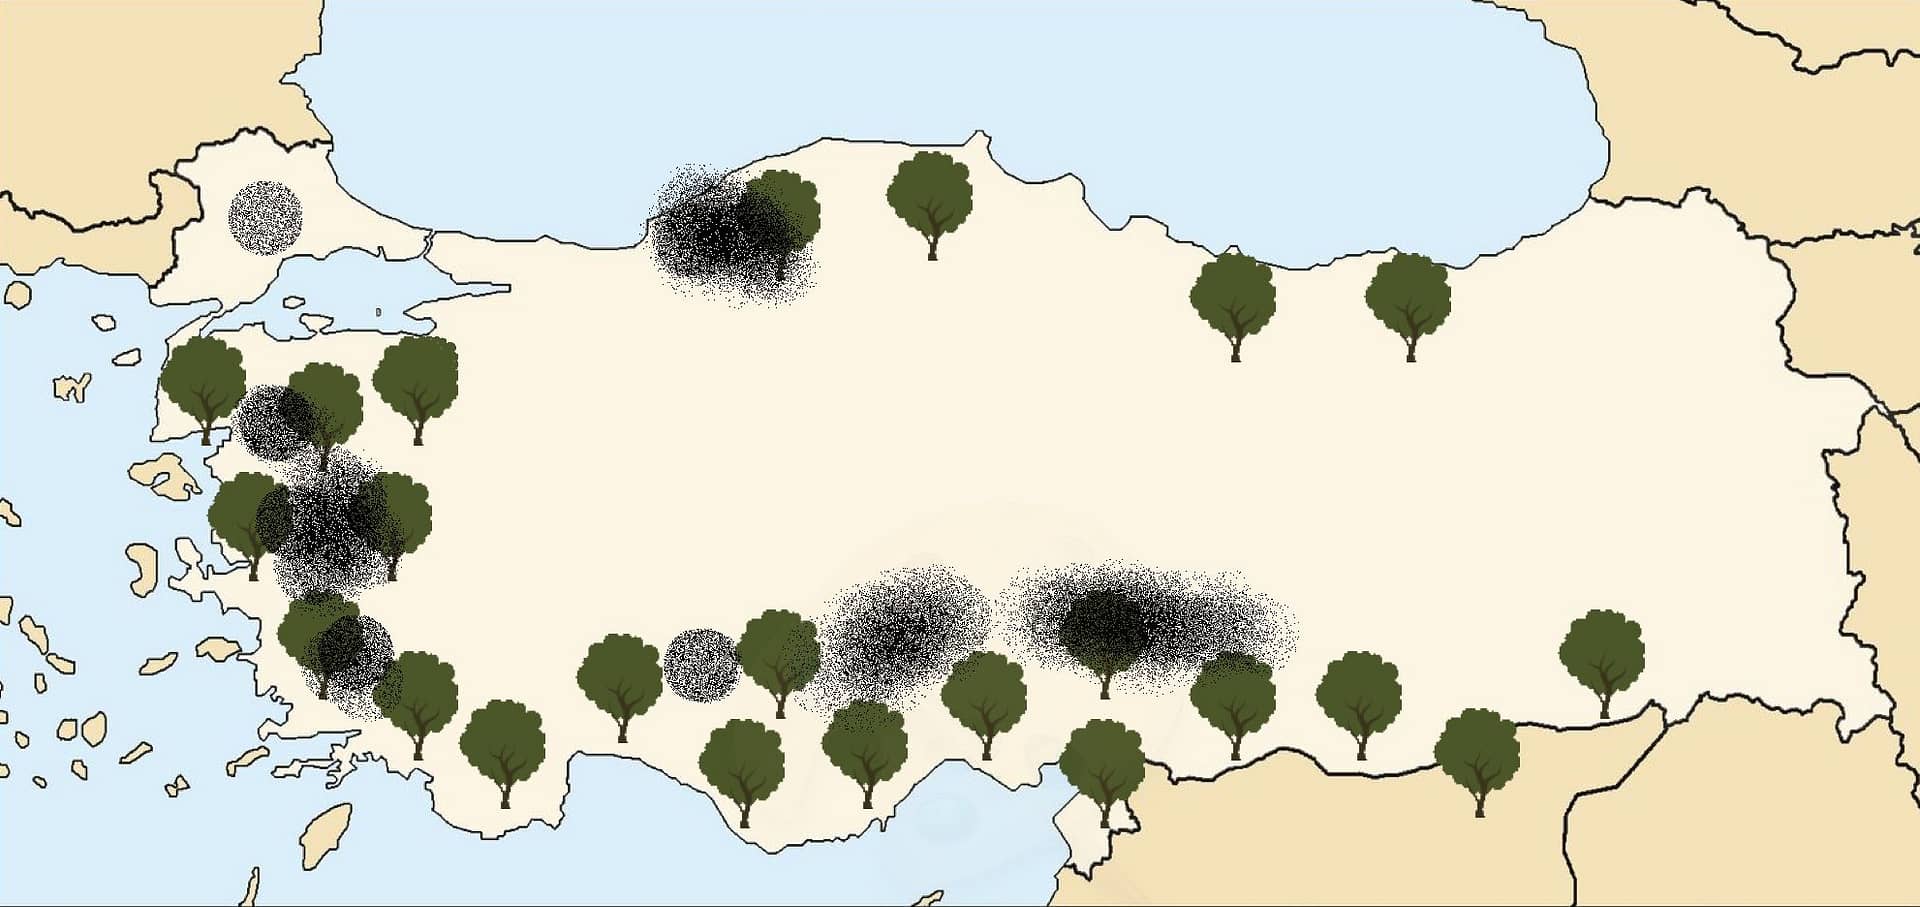 asia-business-neue-regulierung-in-der-turkei-genehmigt-die-entfernung-von-olivenbaumen-fur-den-kohleabbau-von-olivenol-zeiten